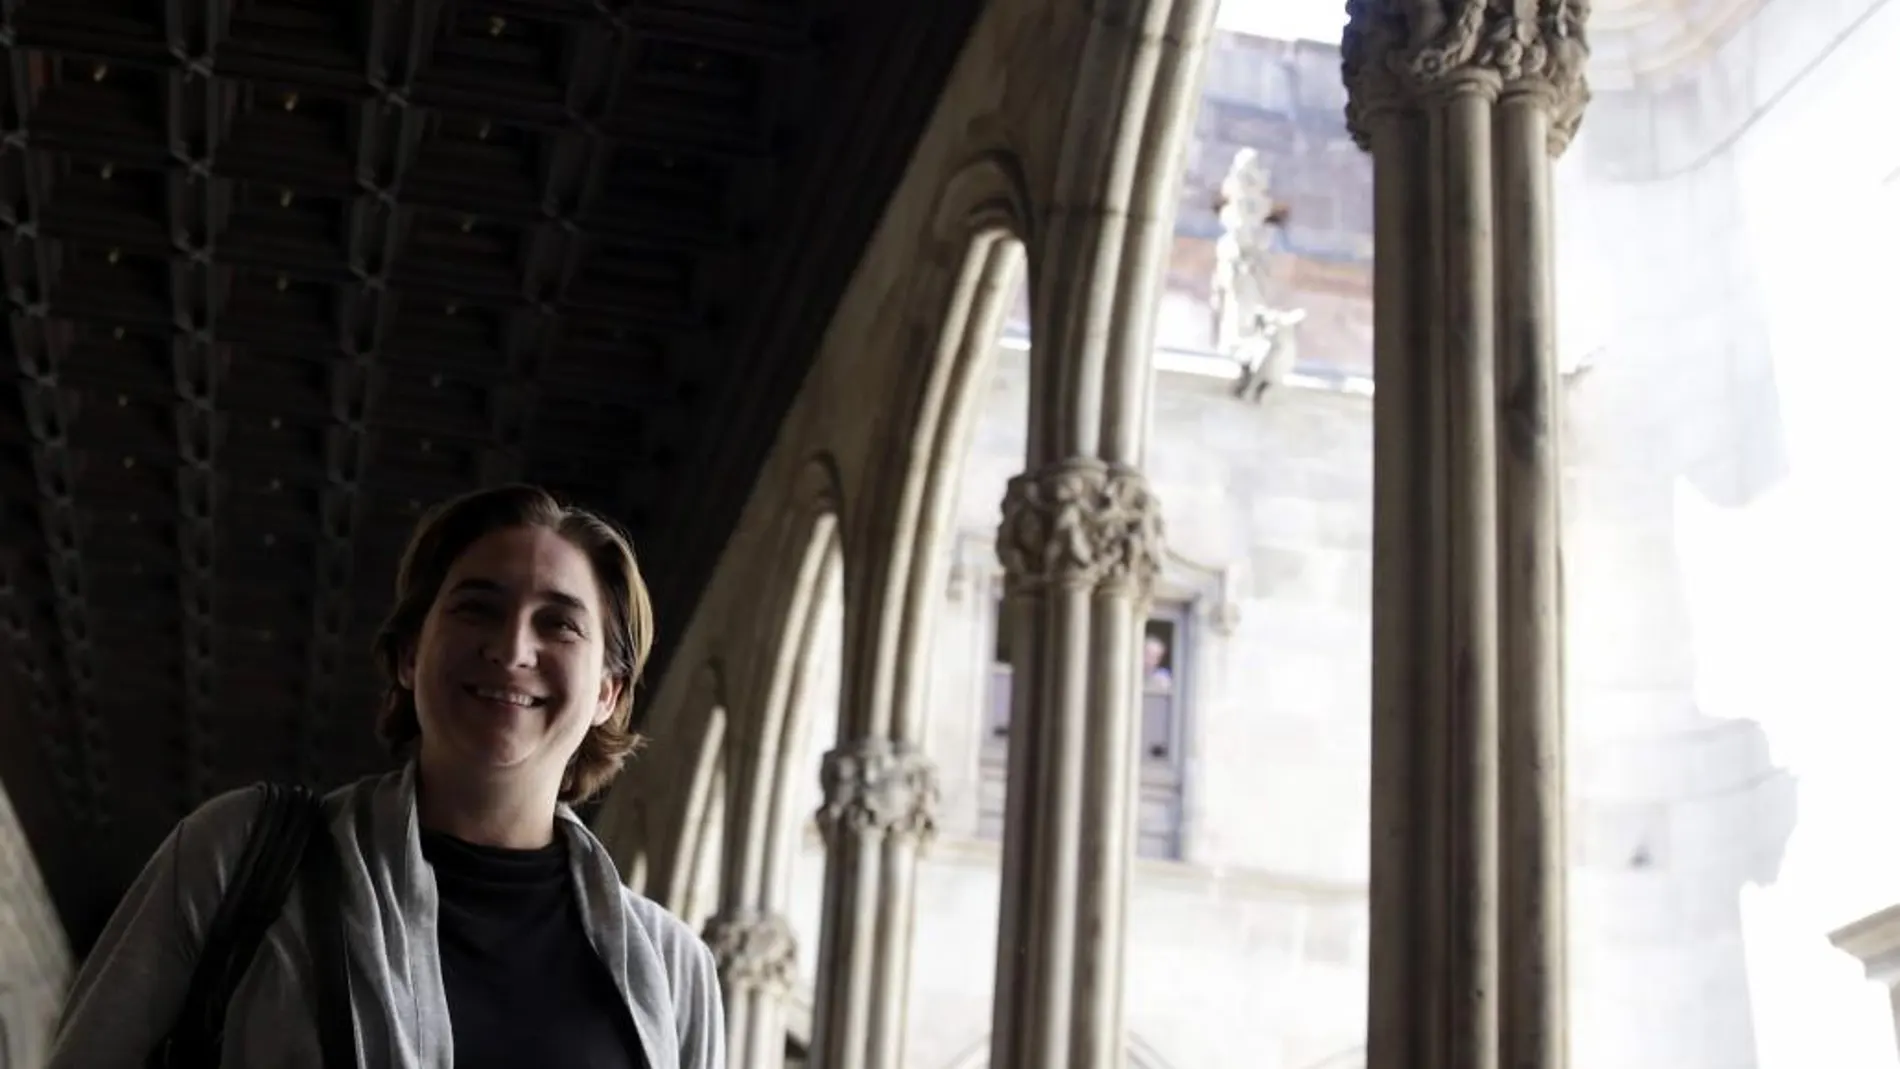 La ganadora de las elecciones municipales en Barcelona, Ada Colau (BComú), en la galería gótica del ayuntamiento de Barcelona